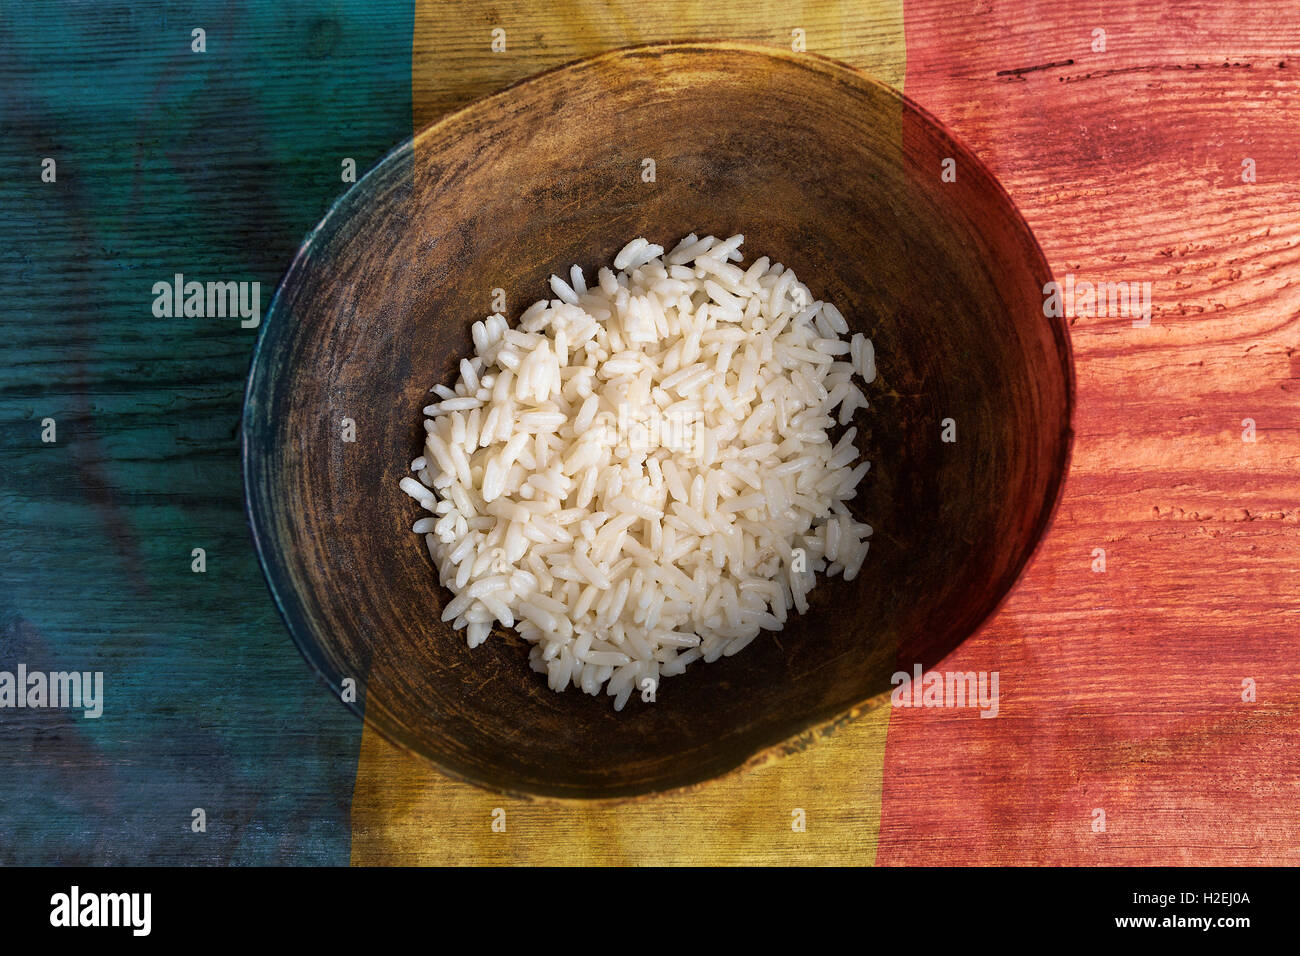 Armut-Konzept, Schüssel Reis mit rumänische Flagge auf hölzernen Hintergrund Stockfoto